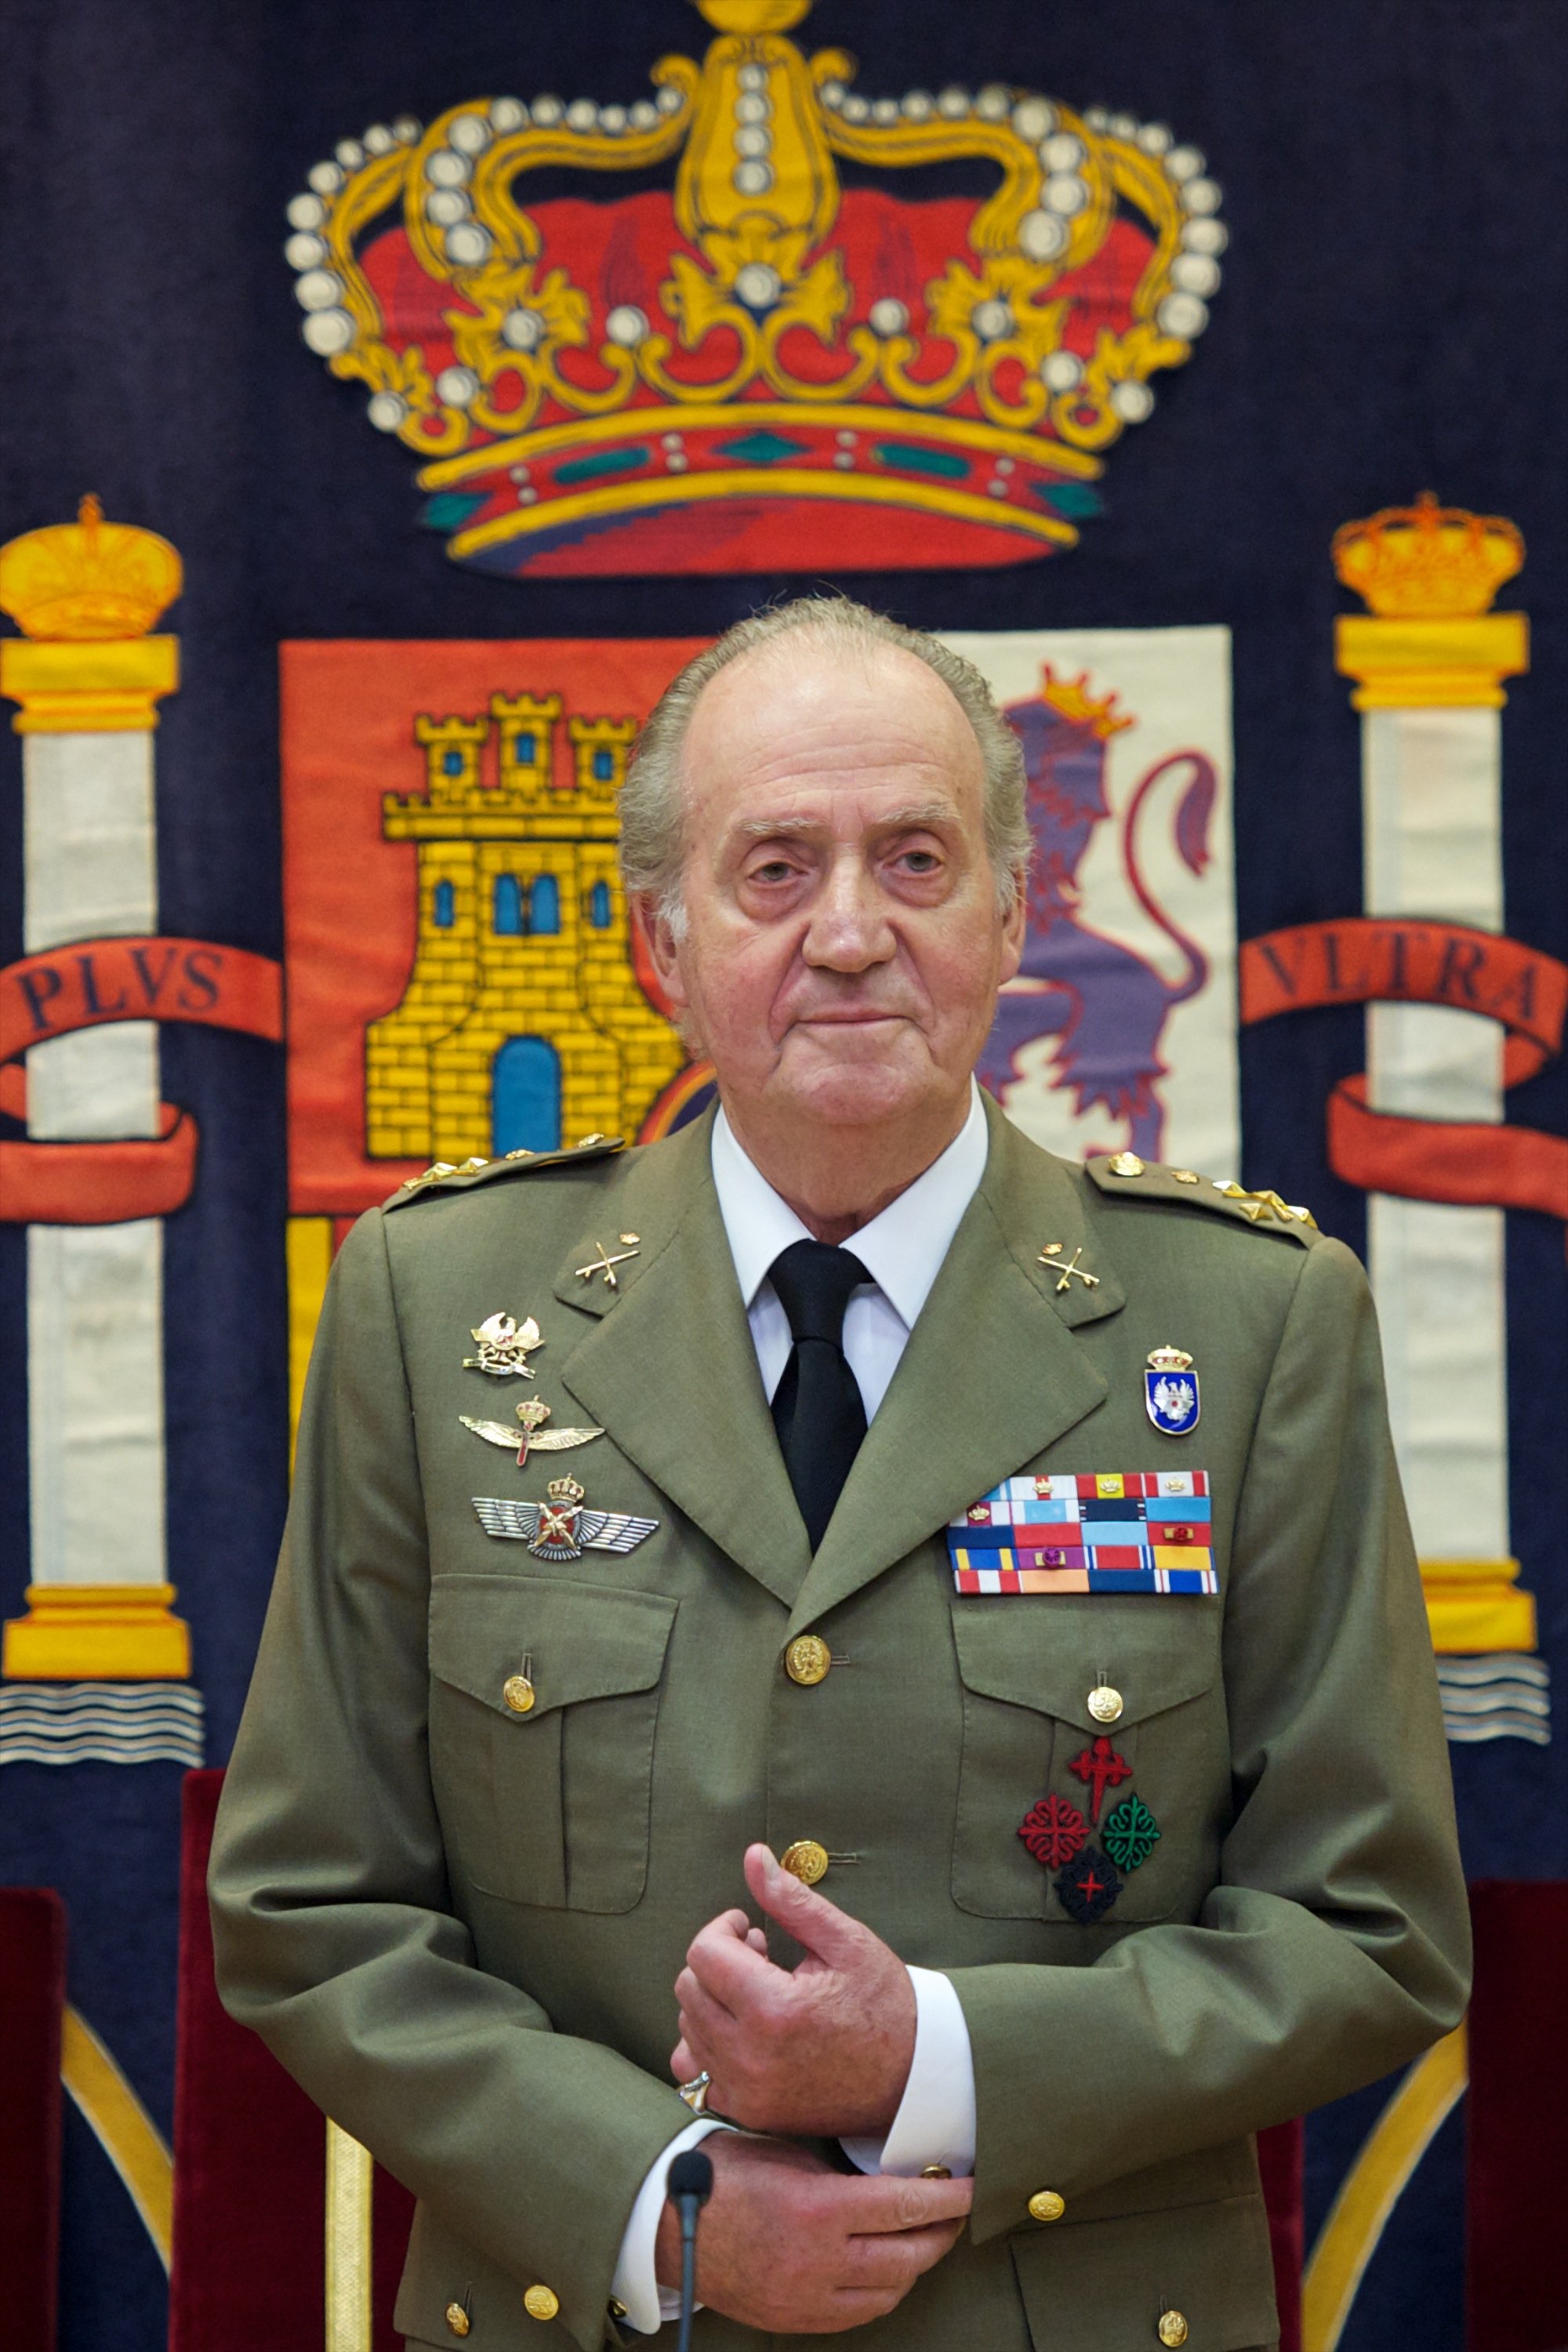 Le roi Juan Carlos d'Espagne assiste à la clôture de l'année académique "L'état-major général de l'armée espagnole" le 29 juin 2012 à Madrid, en Espagne. / Source : Getty Images